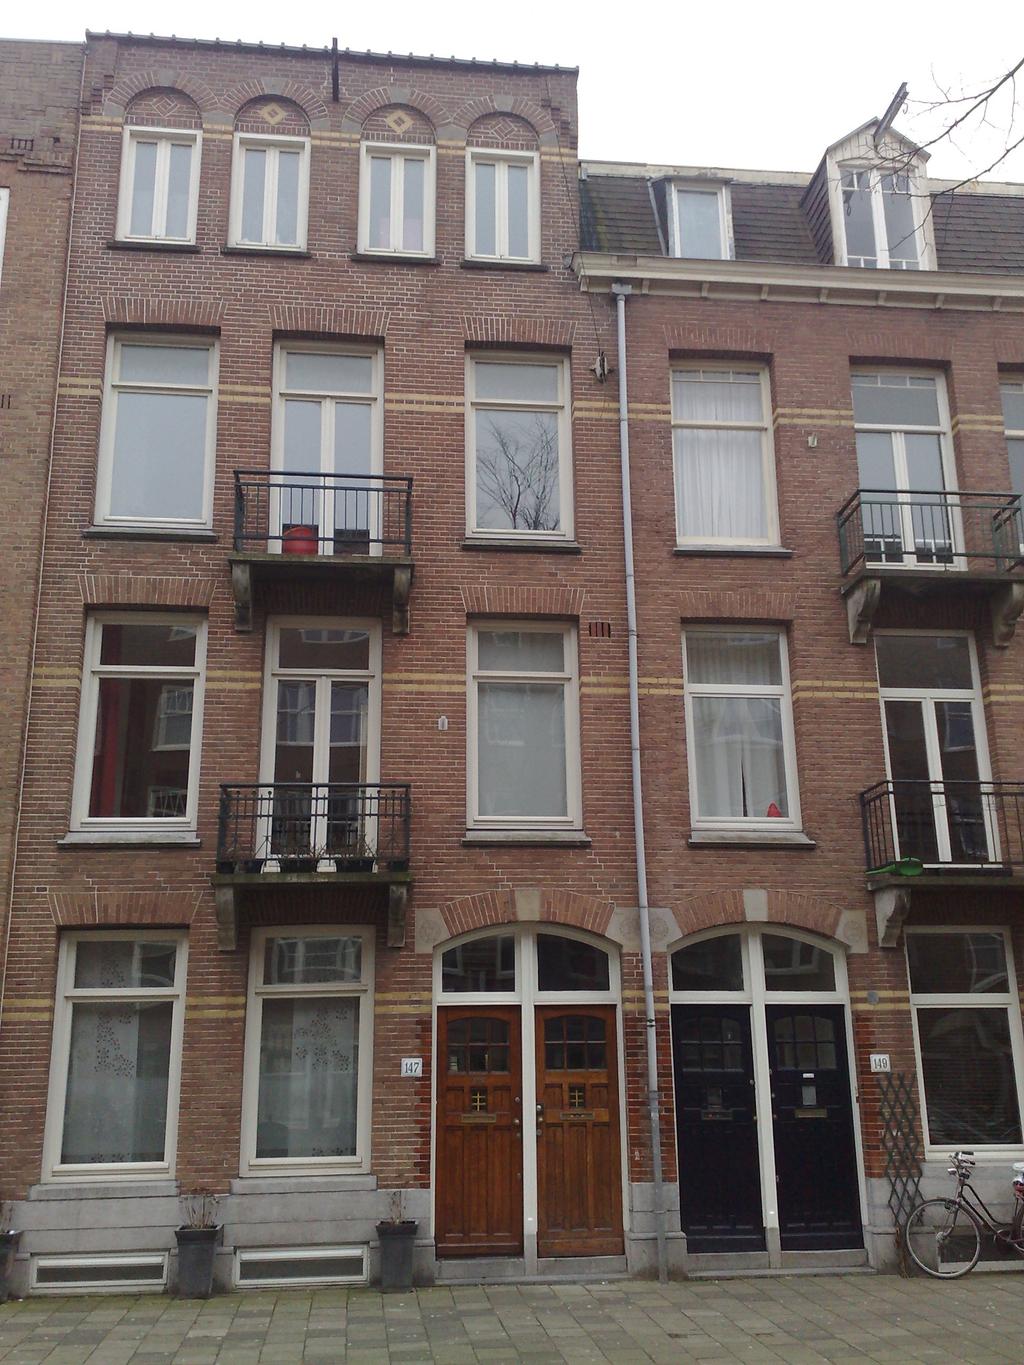 Afb 7 en 8. Voorbeeld van eind 19de eeuws en Amsterdamse school bouwstijl.